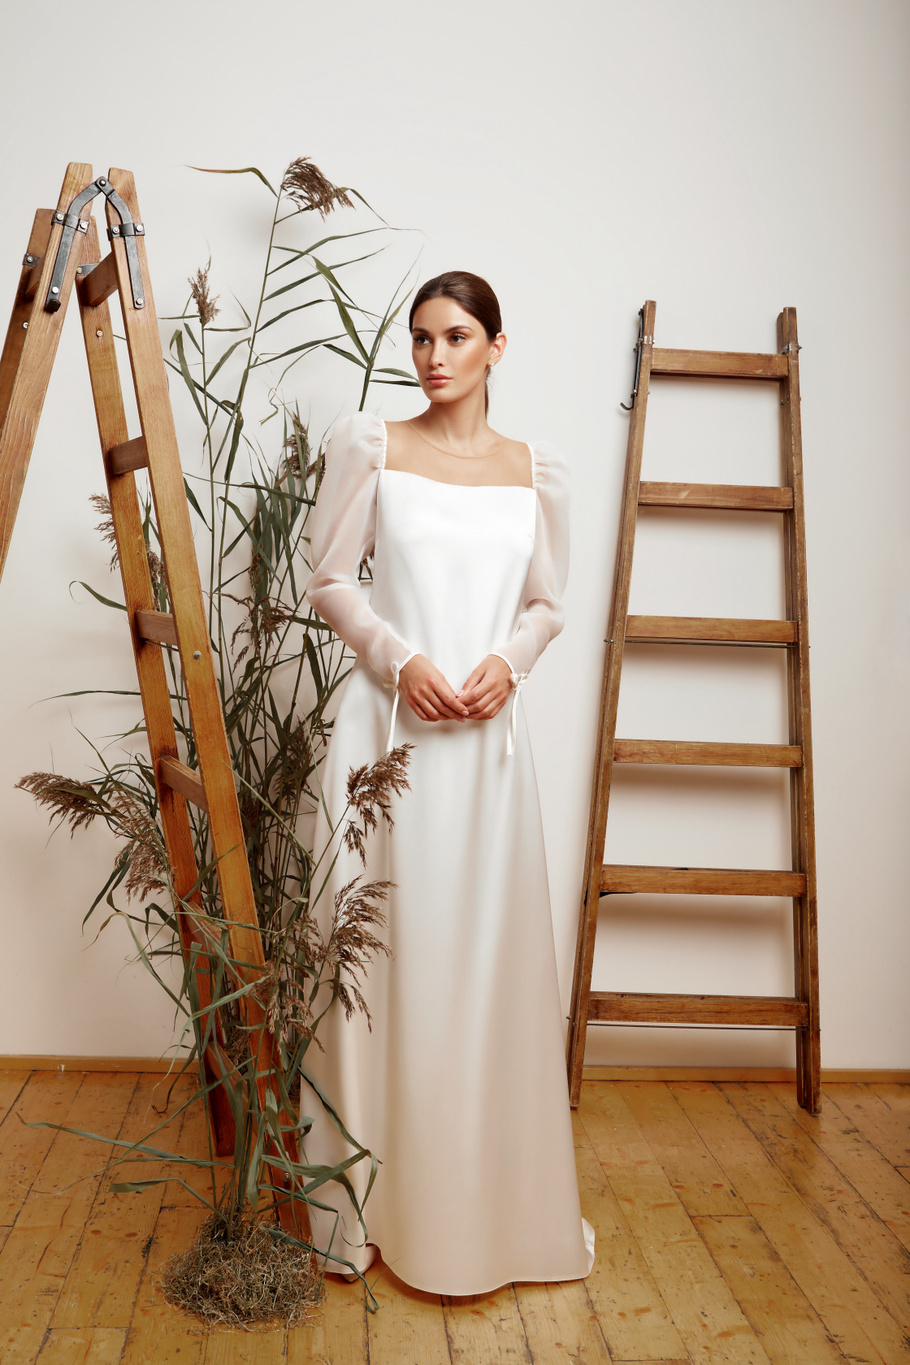 Купить свадебное платье «Роу» Мэрри Марк из коллекции 2020 года в Краснодаре